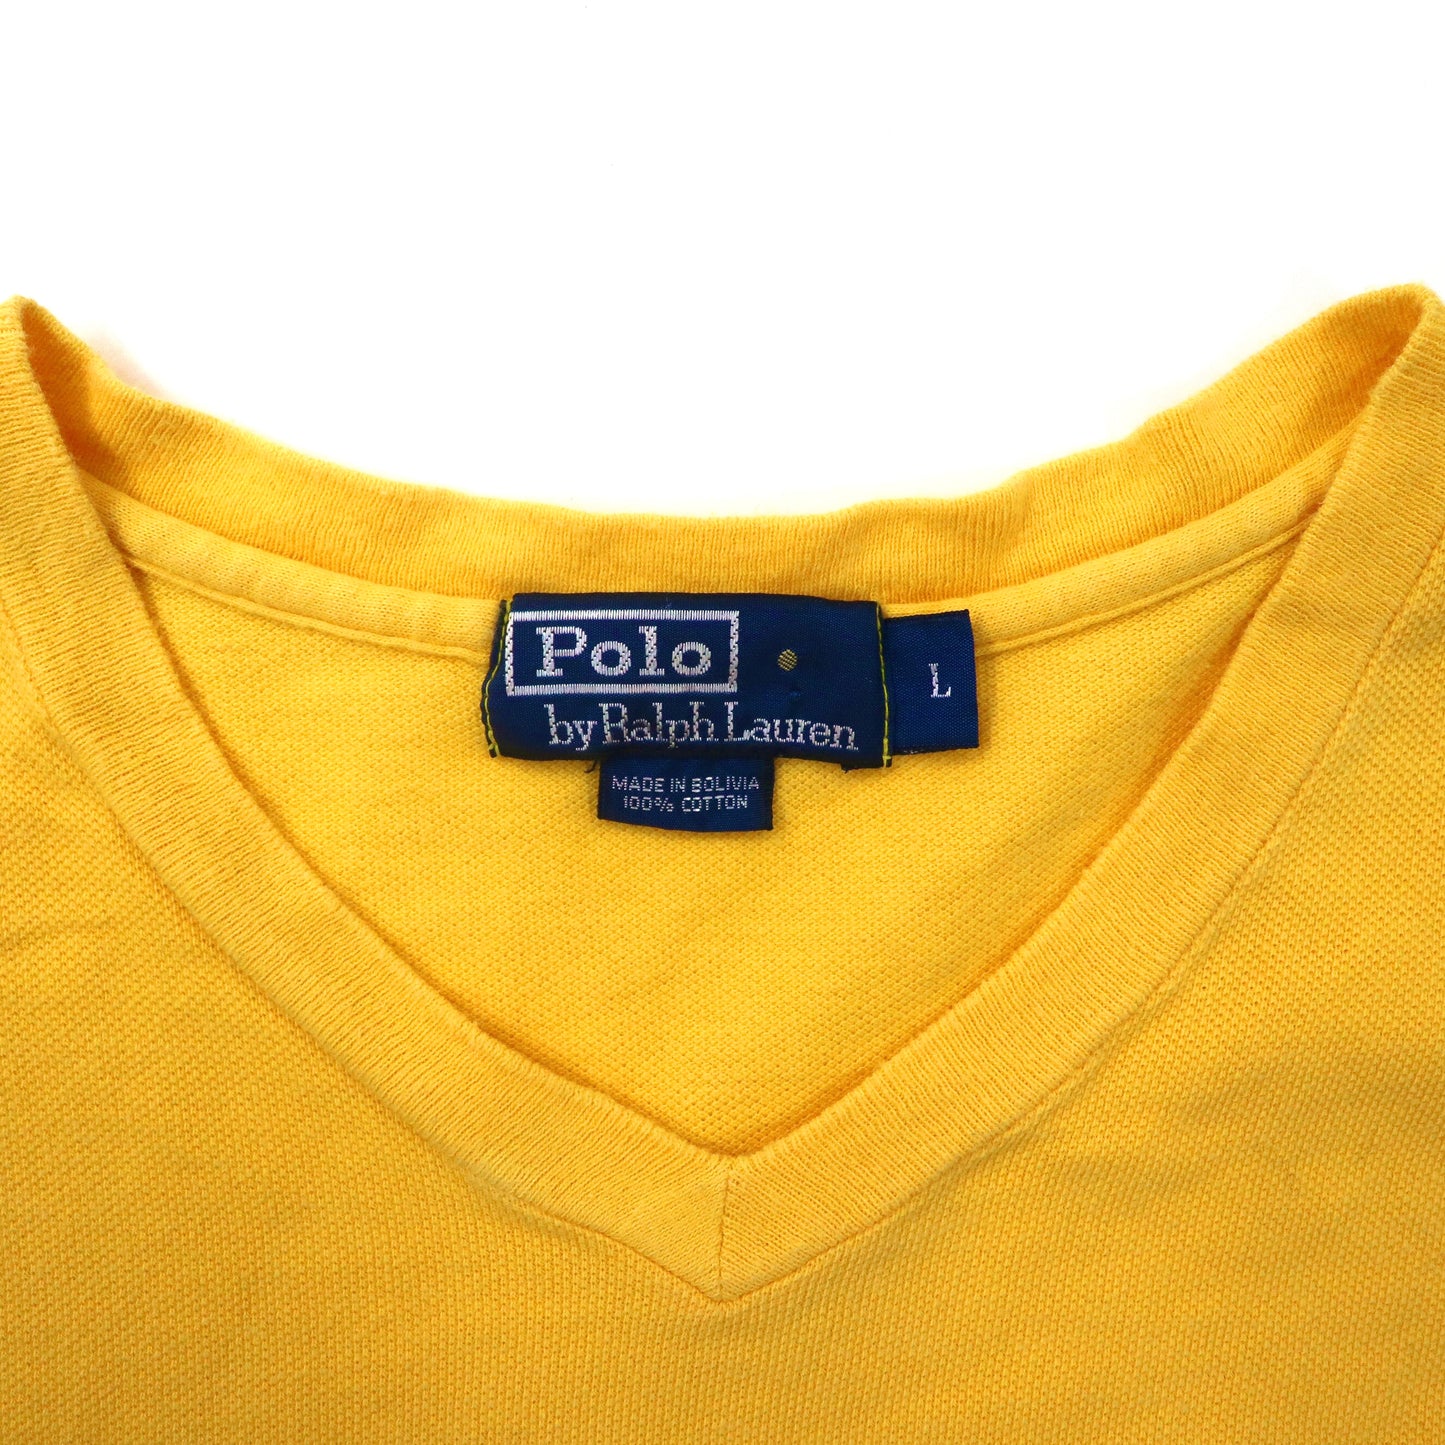 Polo by Ralph Lauren VネックTシャツ L イエロー コットン スモールポニー刺繍